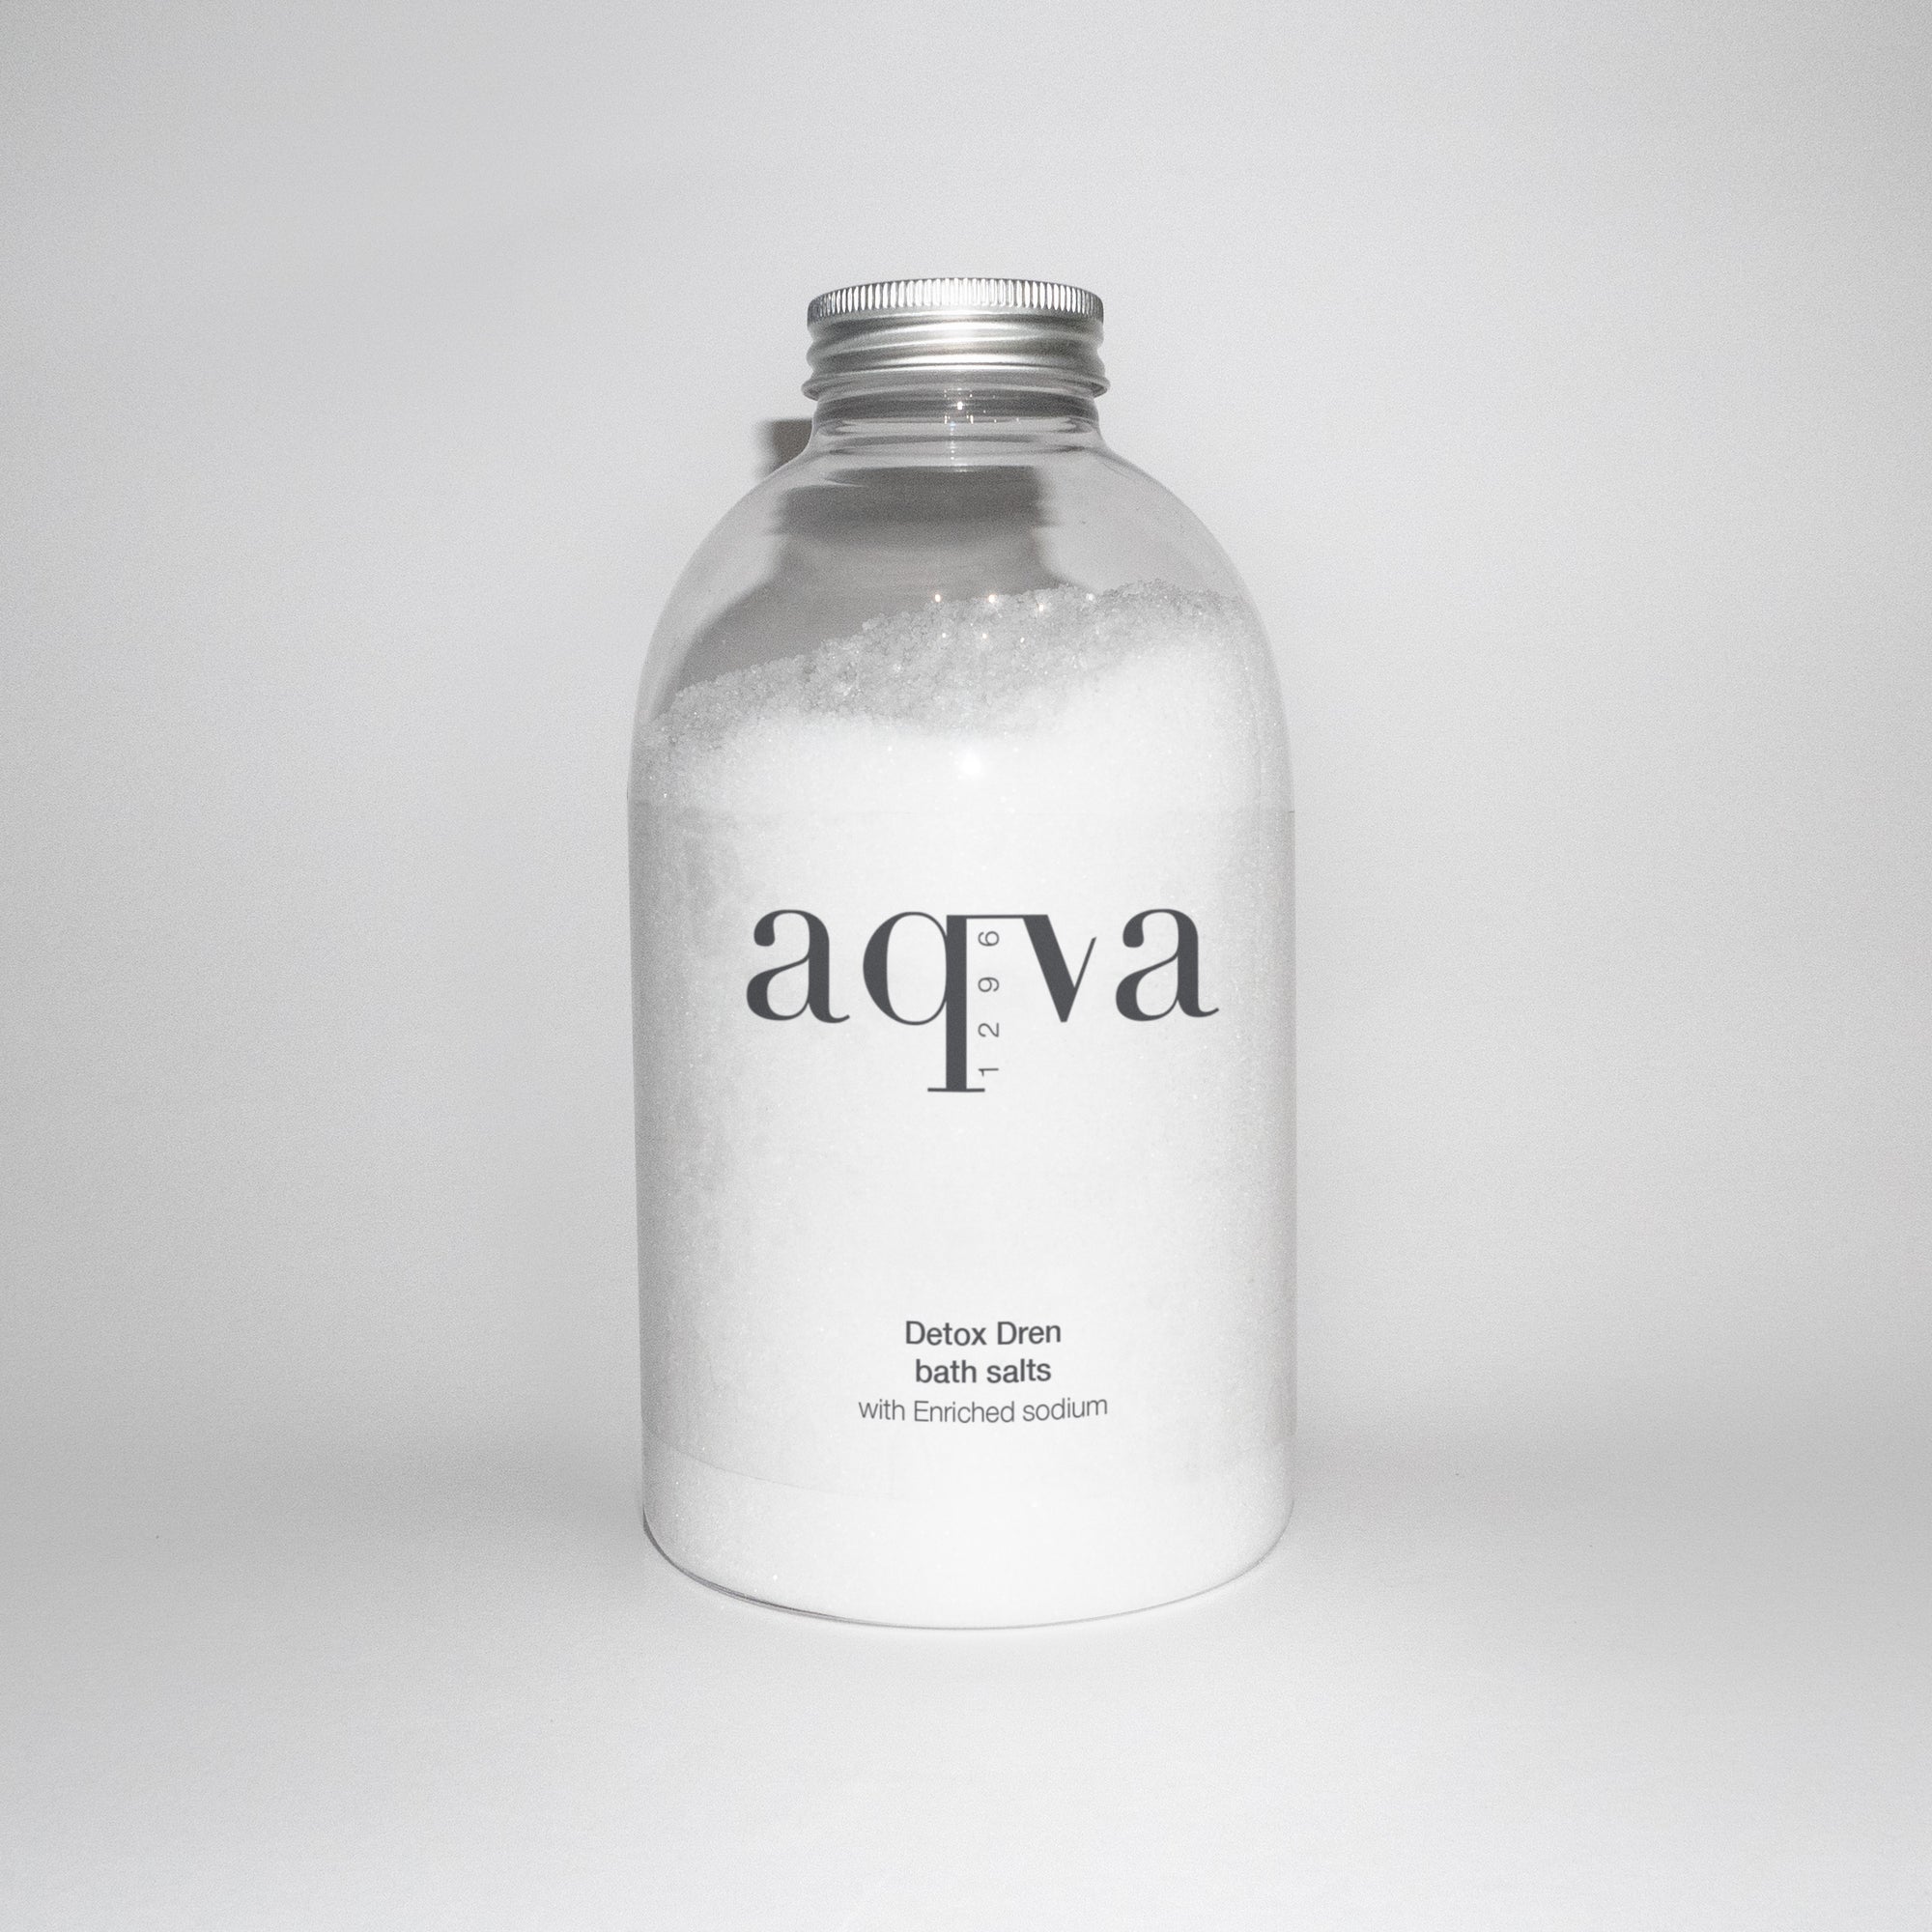 Aqva1296 - Detox dren salts - LaVit Collection